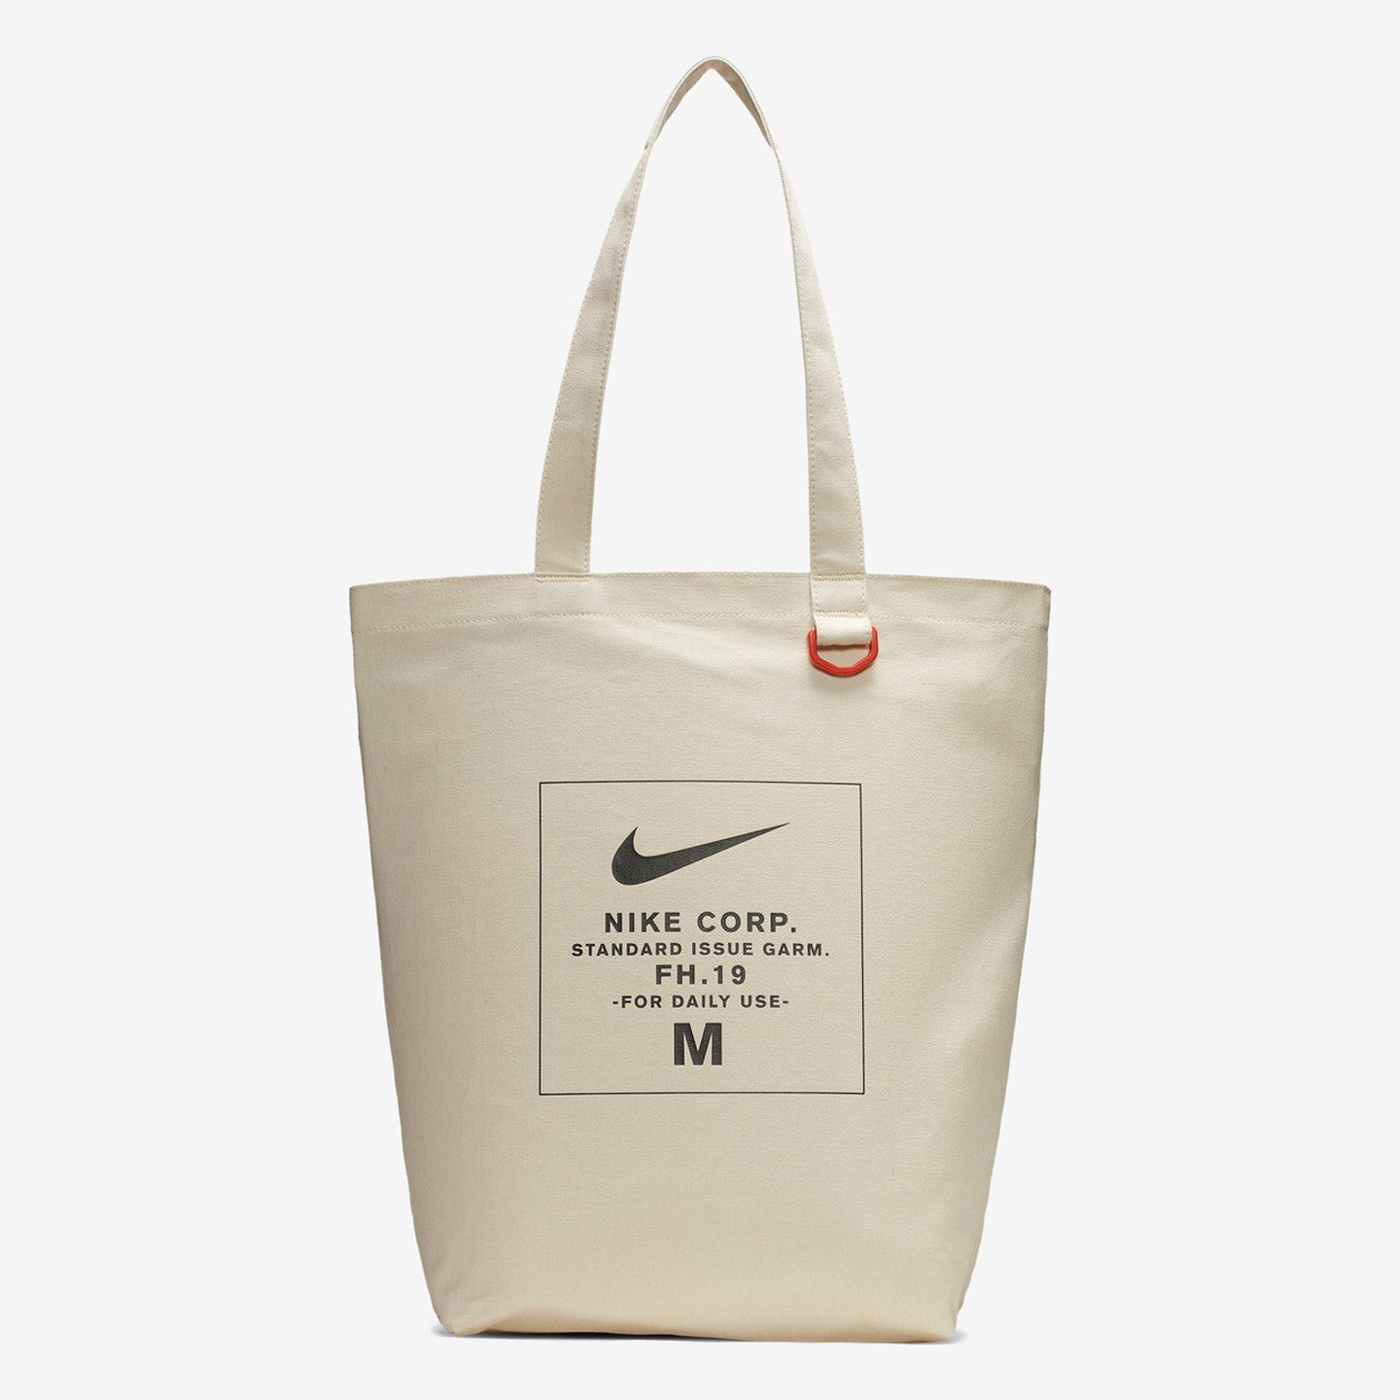 ★現貨在庫★ Nike Totes Heritage Bag 托特包 帆布袋 購物袋 肩背 米白【運動世界】BA6027-123